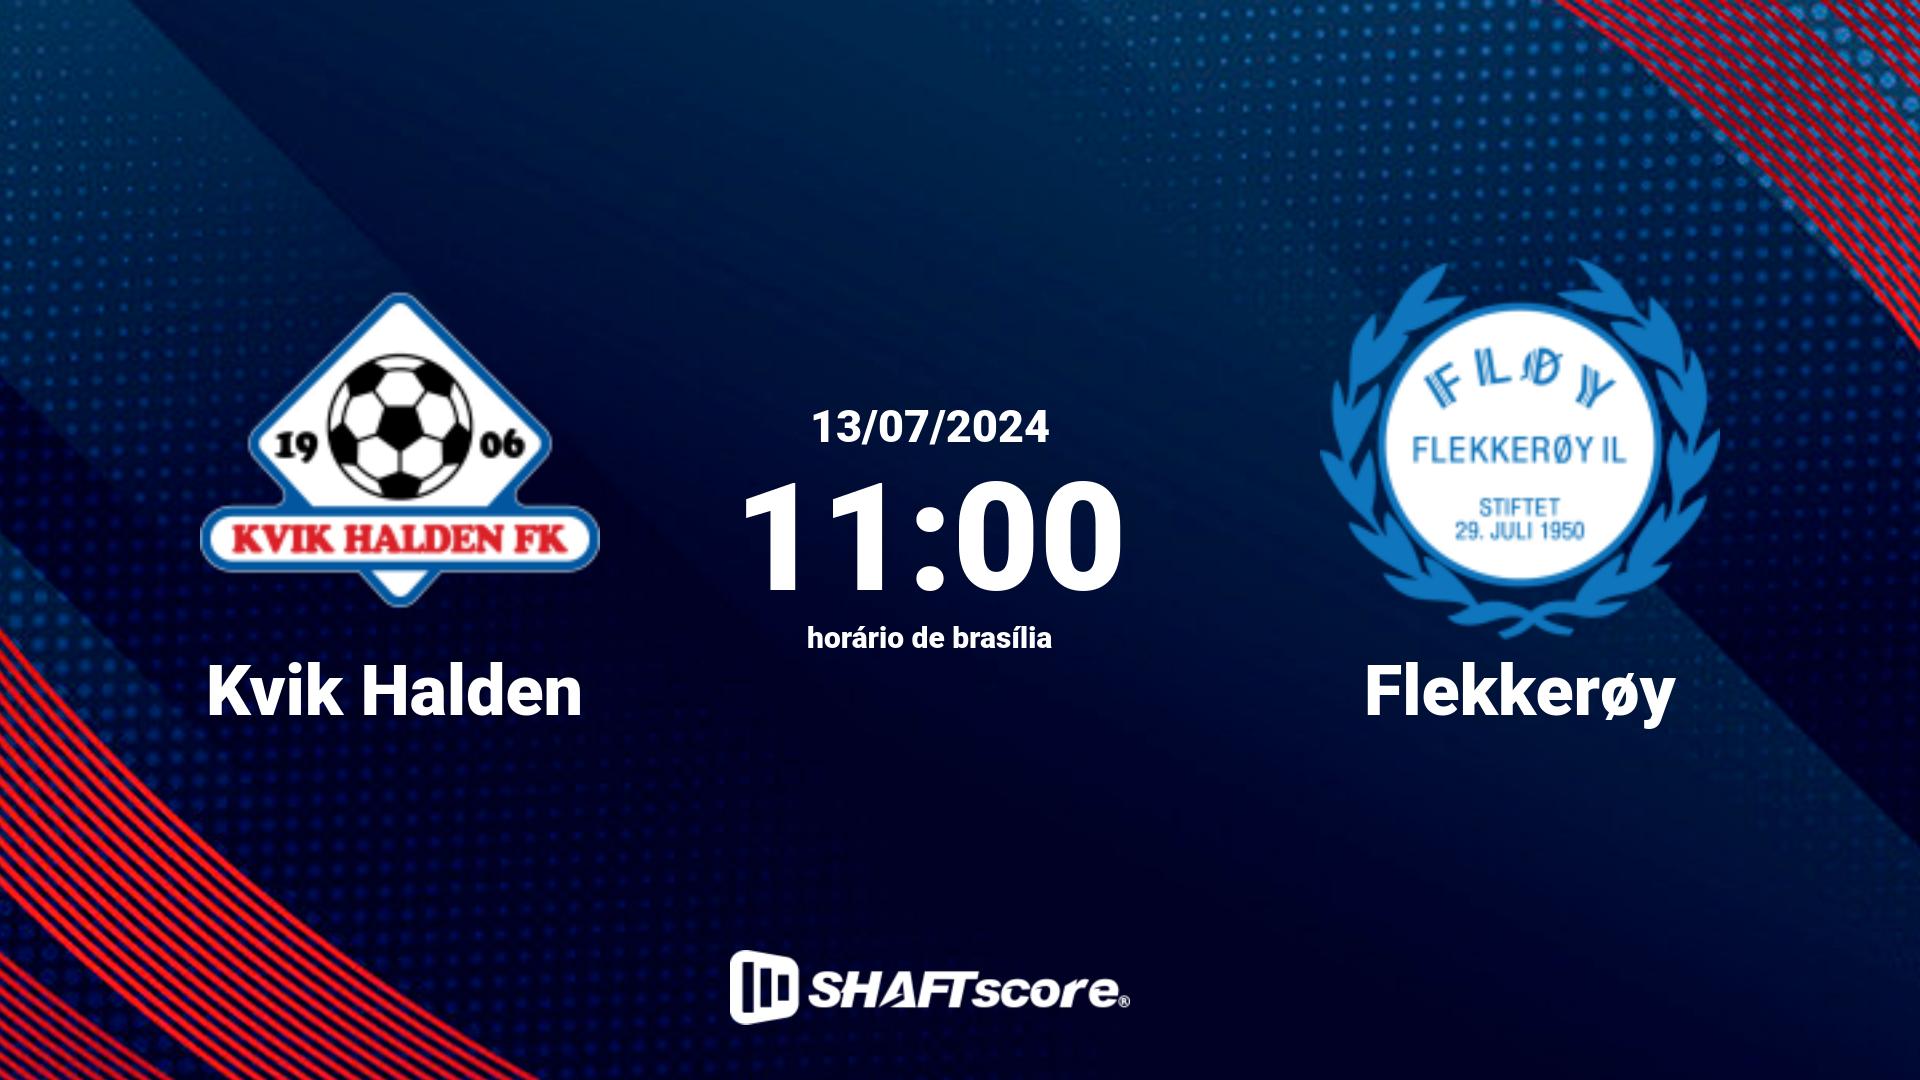 Estatísticas do jogo Kvik Halden vs Flekkerøy 13.07 11:00